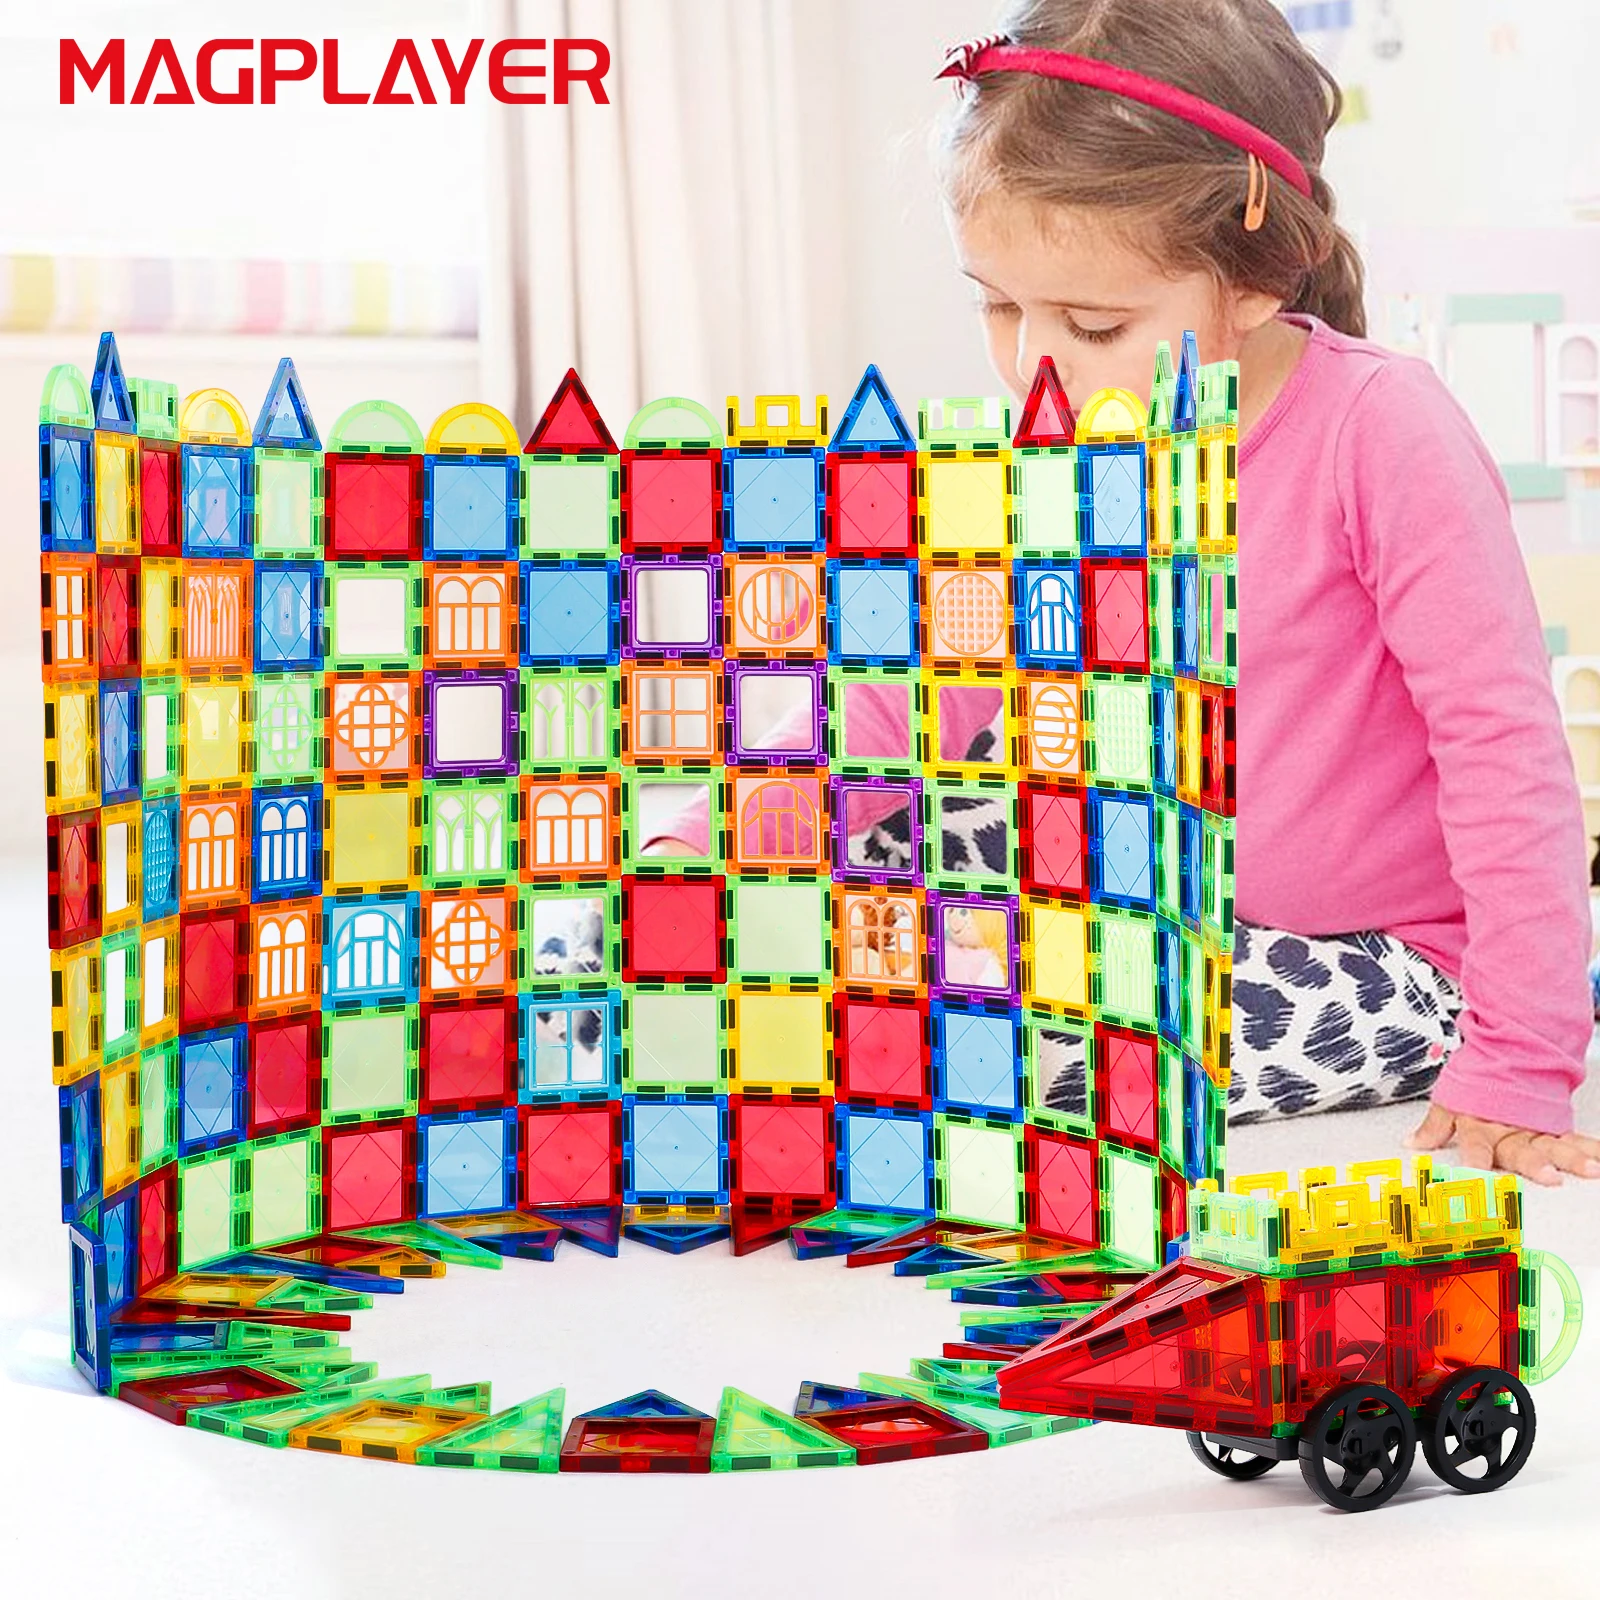 

Магнитный Строительный набор Magplayer, модель и конструкция «сделай сам», магнитные блоки, плитки Монтессори, развивающие игрушки для детей, подарок